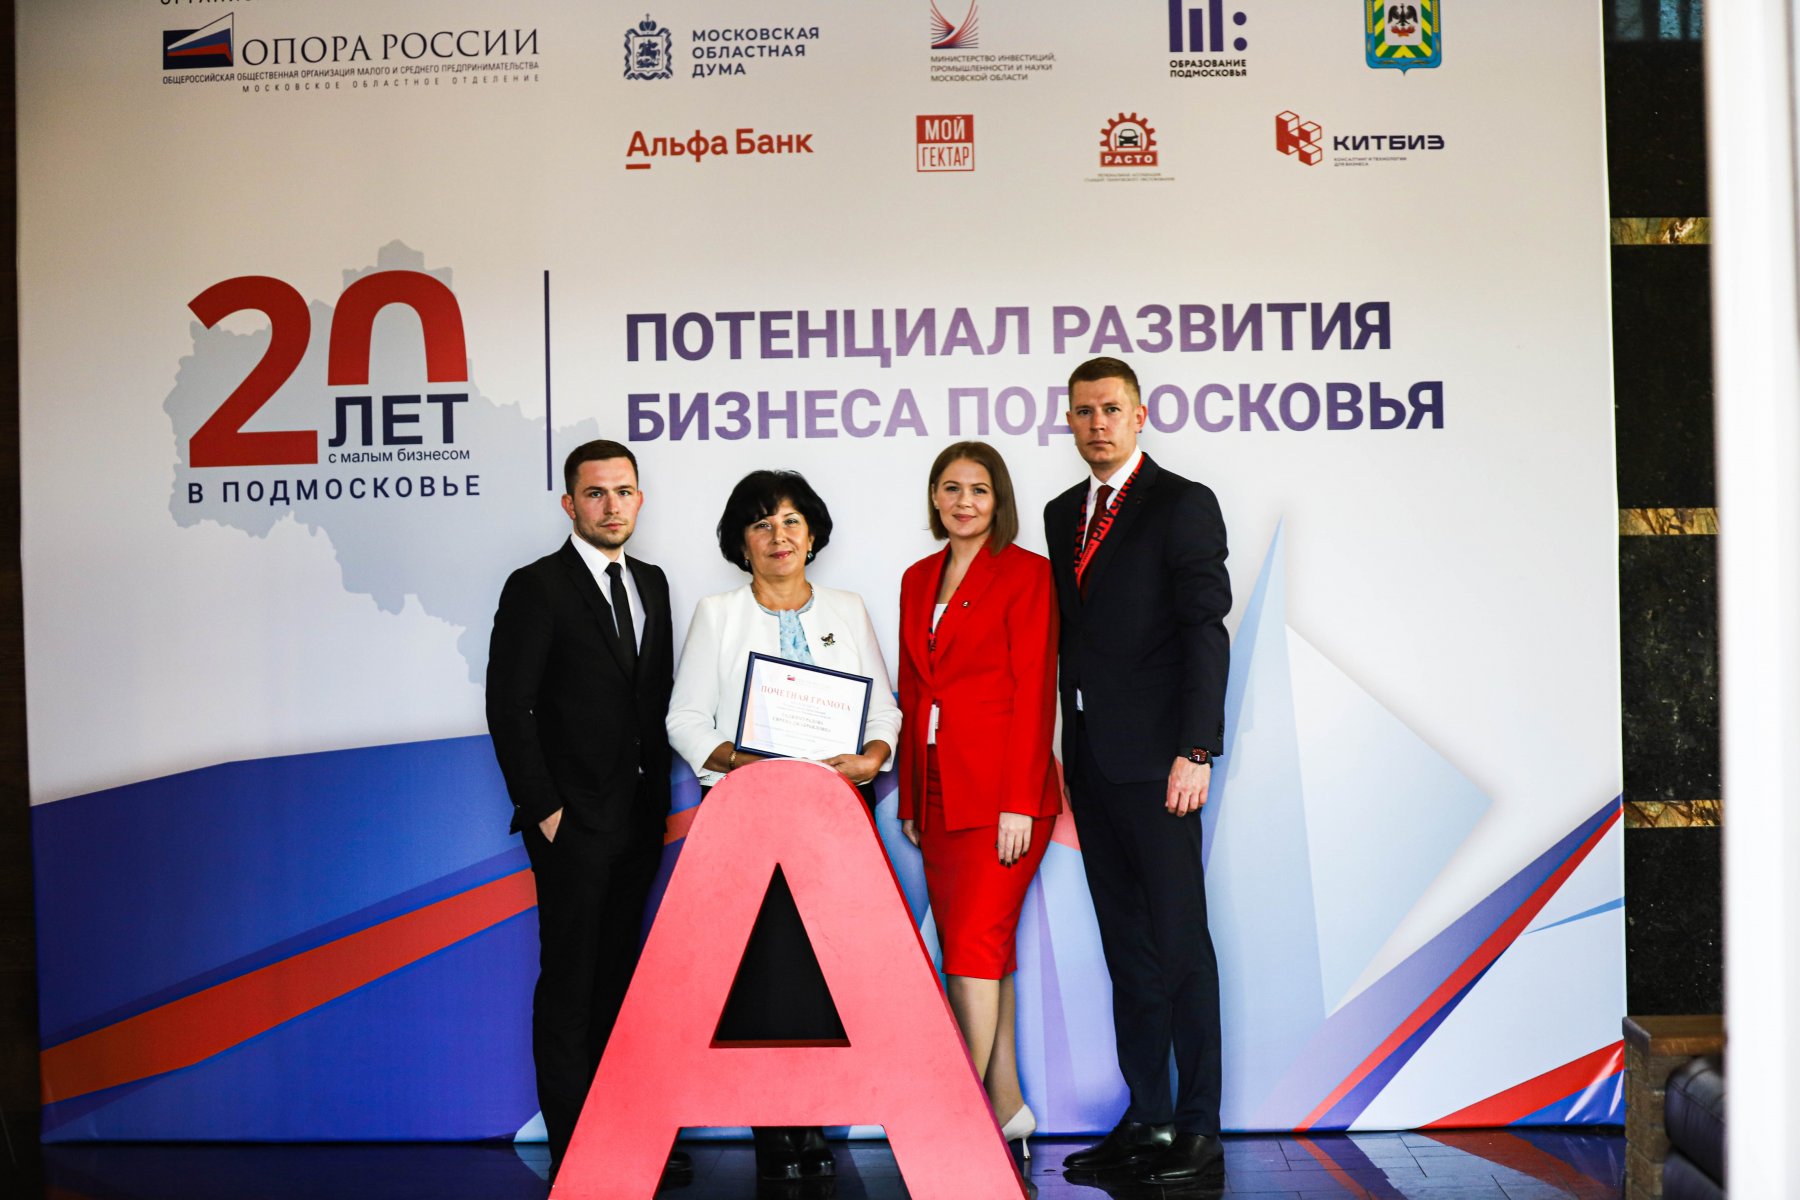 Альфа-Банк представил свои продукты для МСП на форуме в честь 20-летия Московского областного отделения организации «ОПОРА РОССИИ»